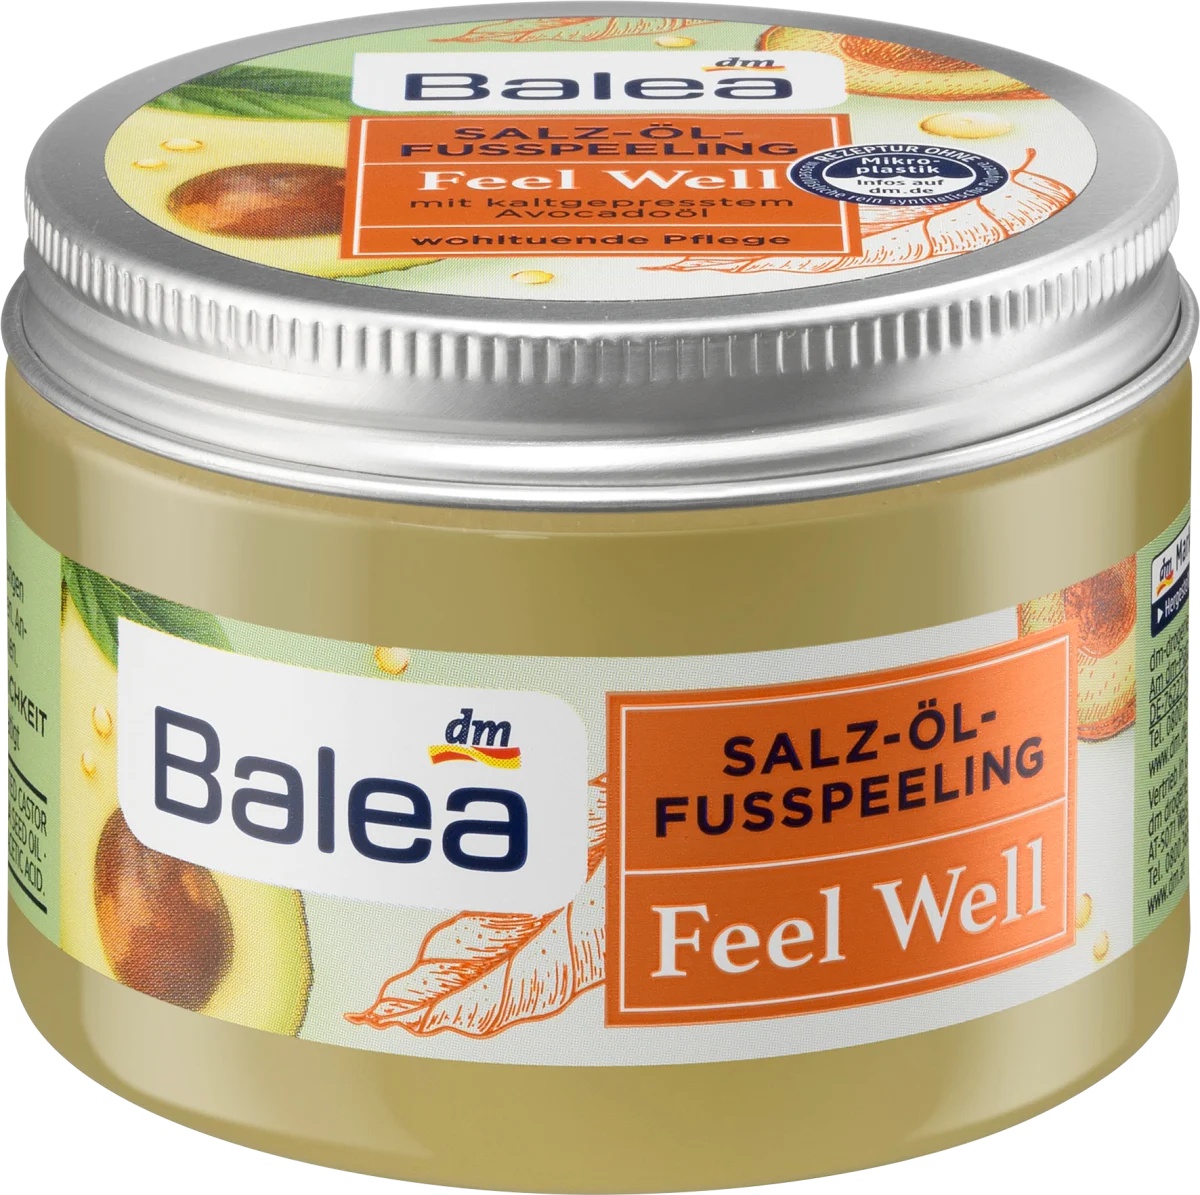 Balea Salz-Öl Fusspeeling Feel Well